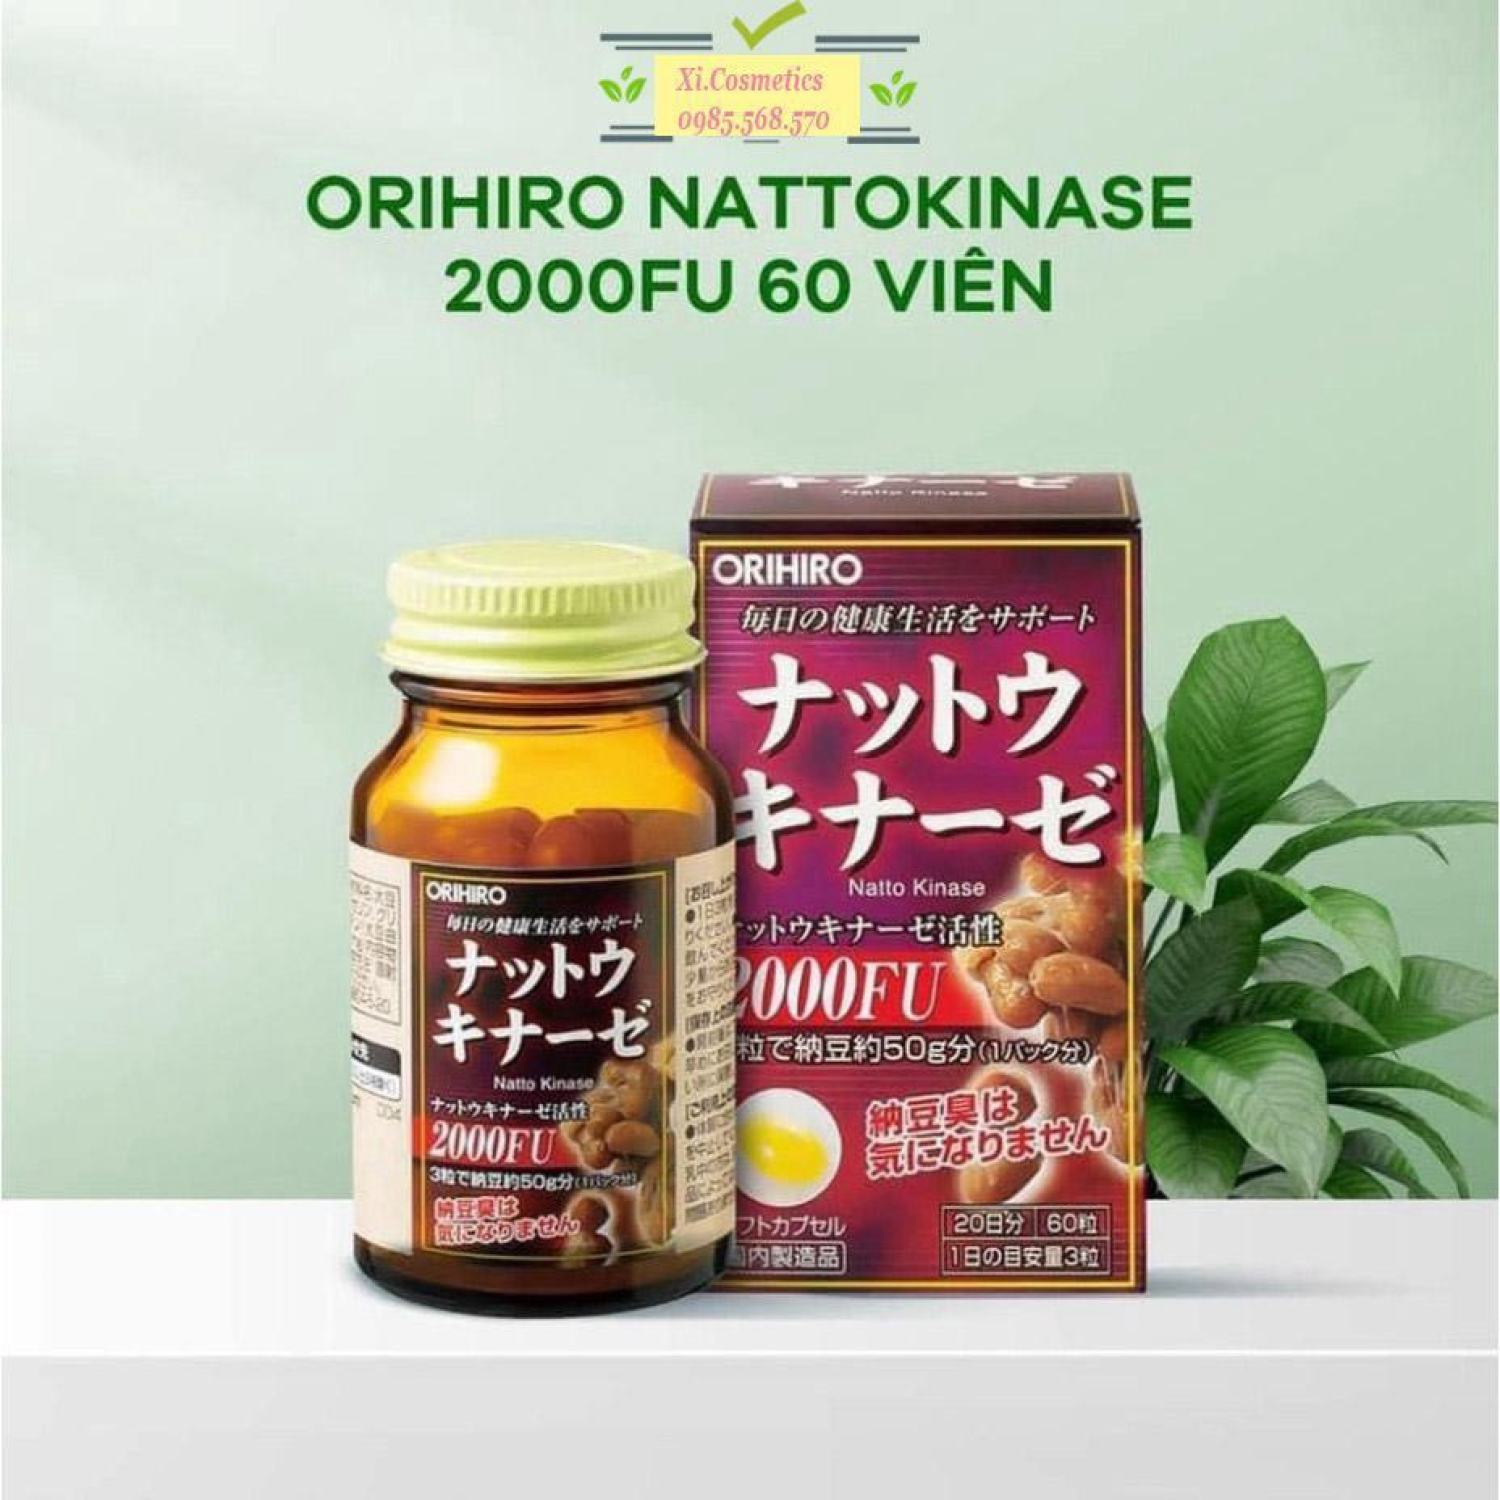 Viên Uống Chống Đột Quỵ, Tai Biến Natto Kinase 2000FU Orihiro Hộp 60 Viên